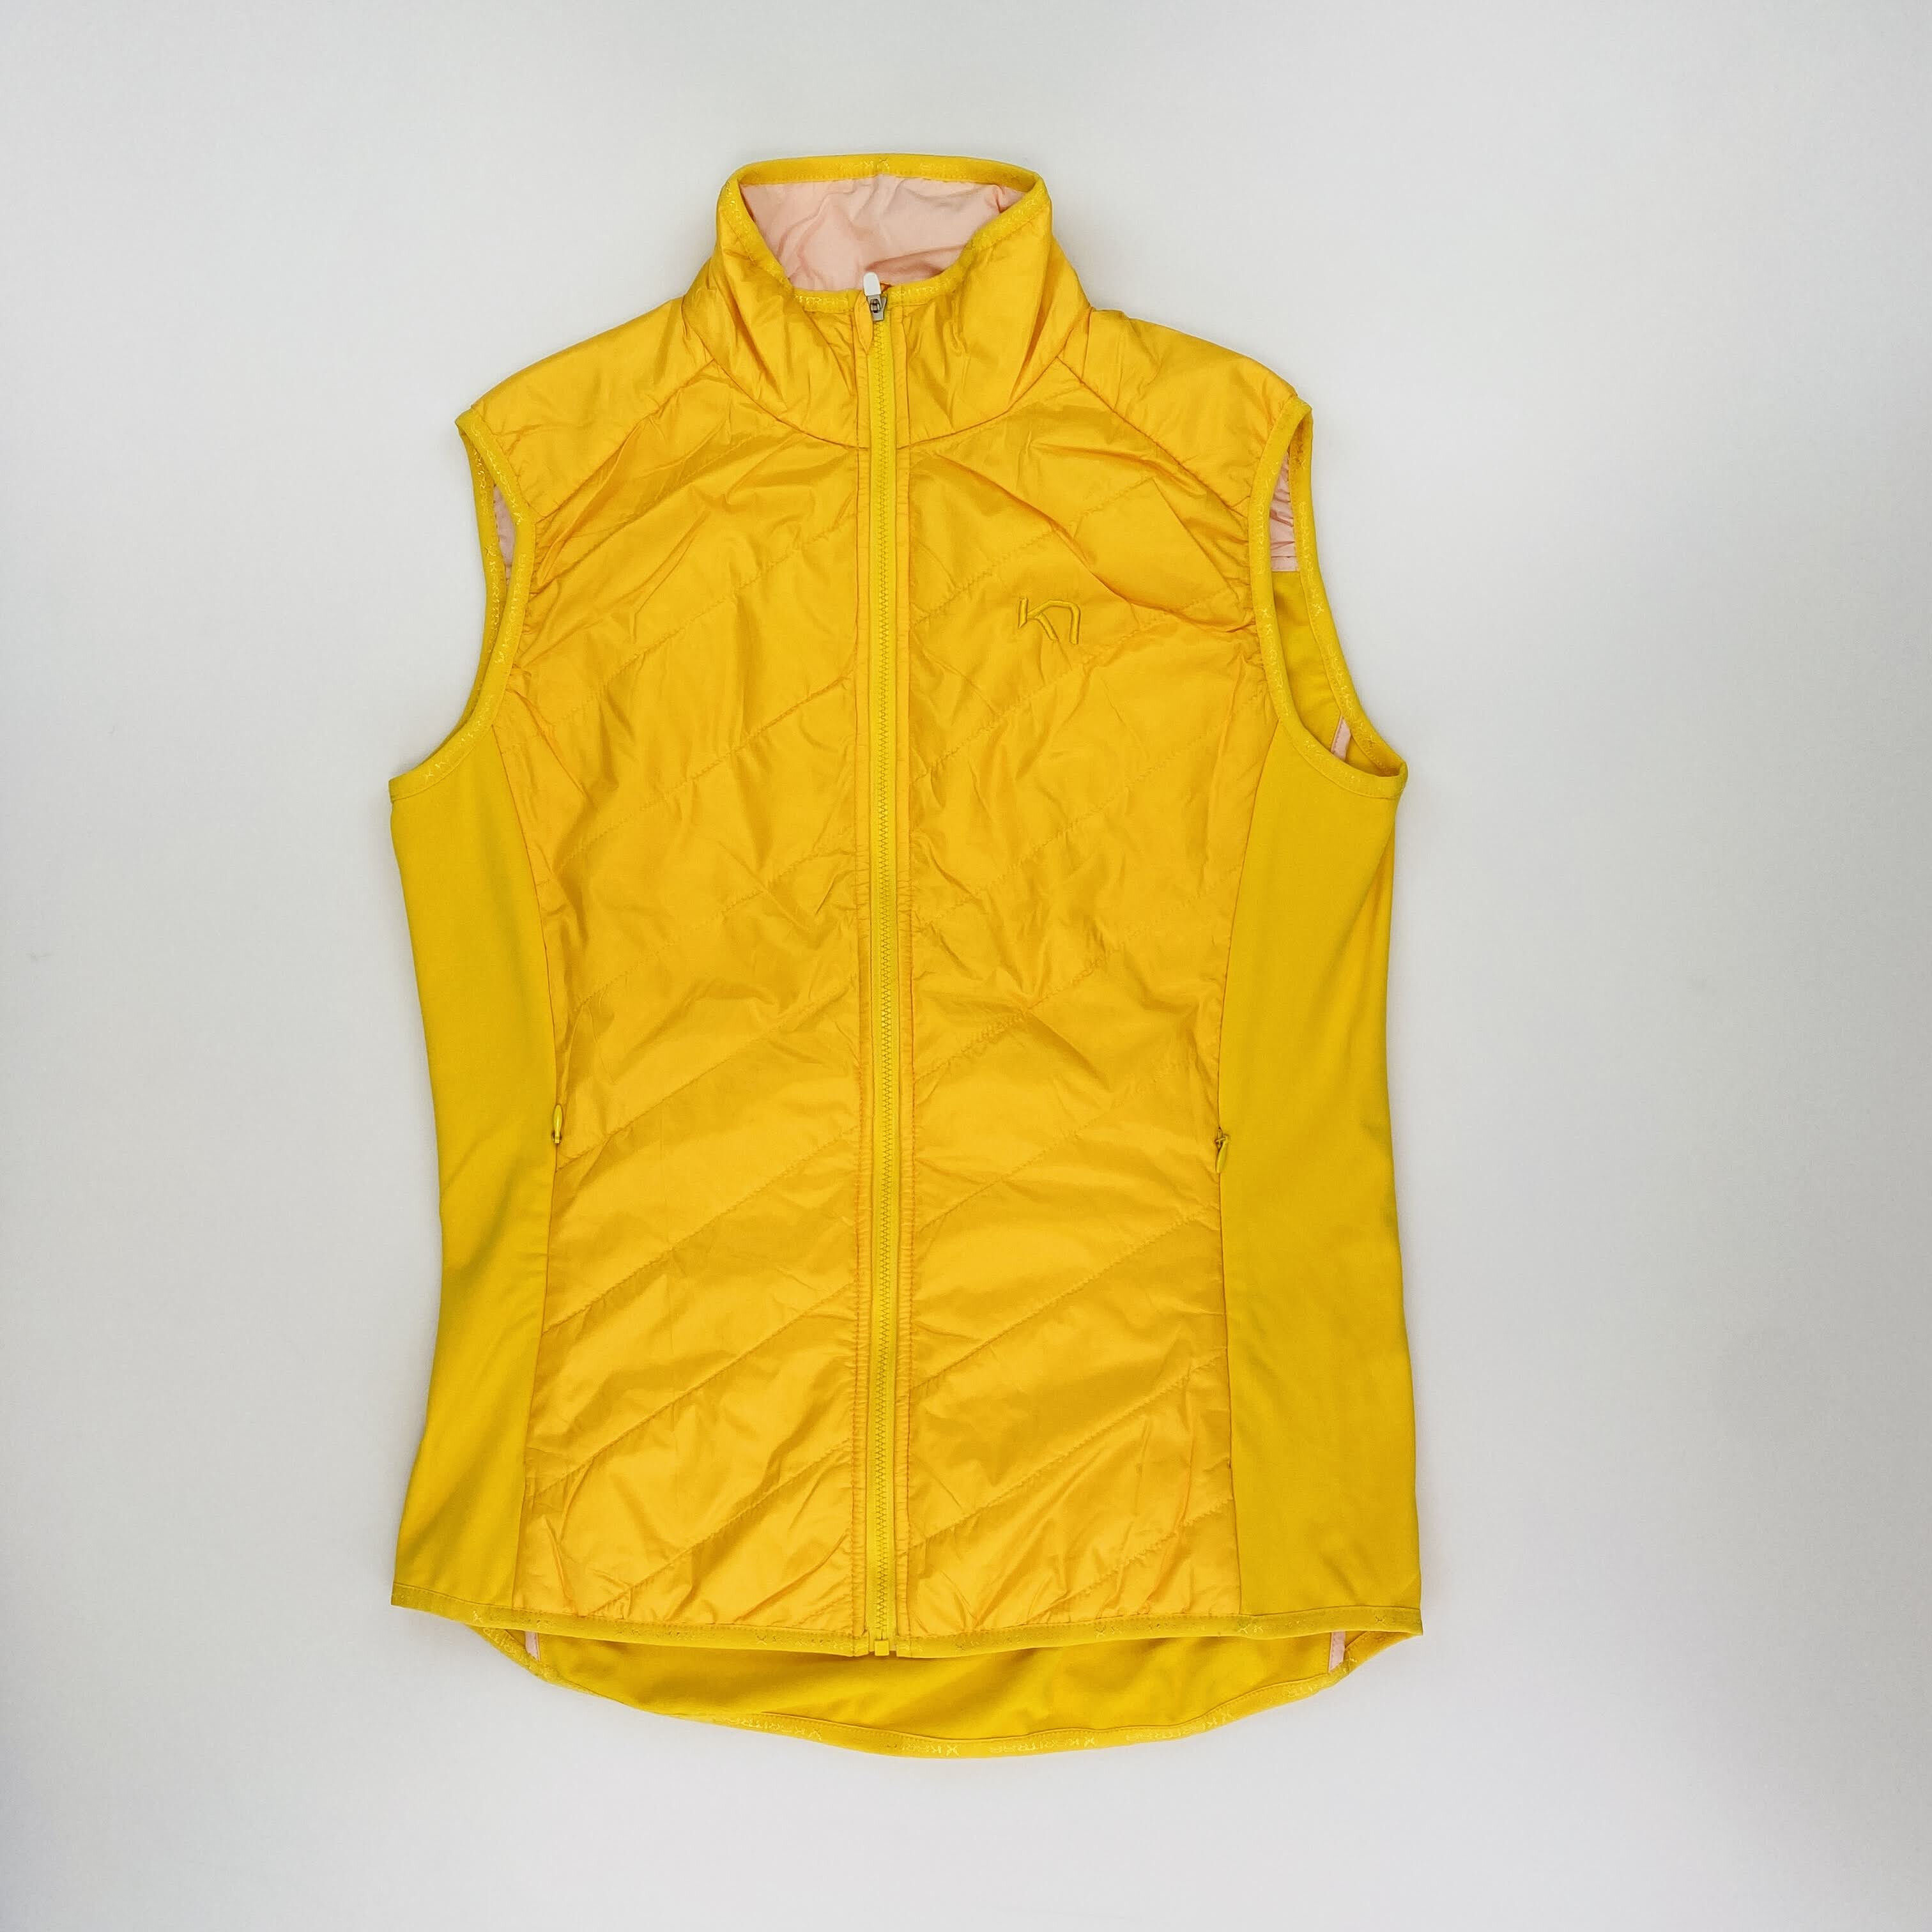 Kari Traa Eva Vest - Second Hand Jacket - Women's - Yellow - M | Hardloop